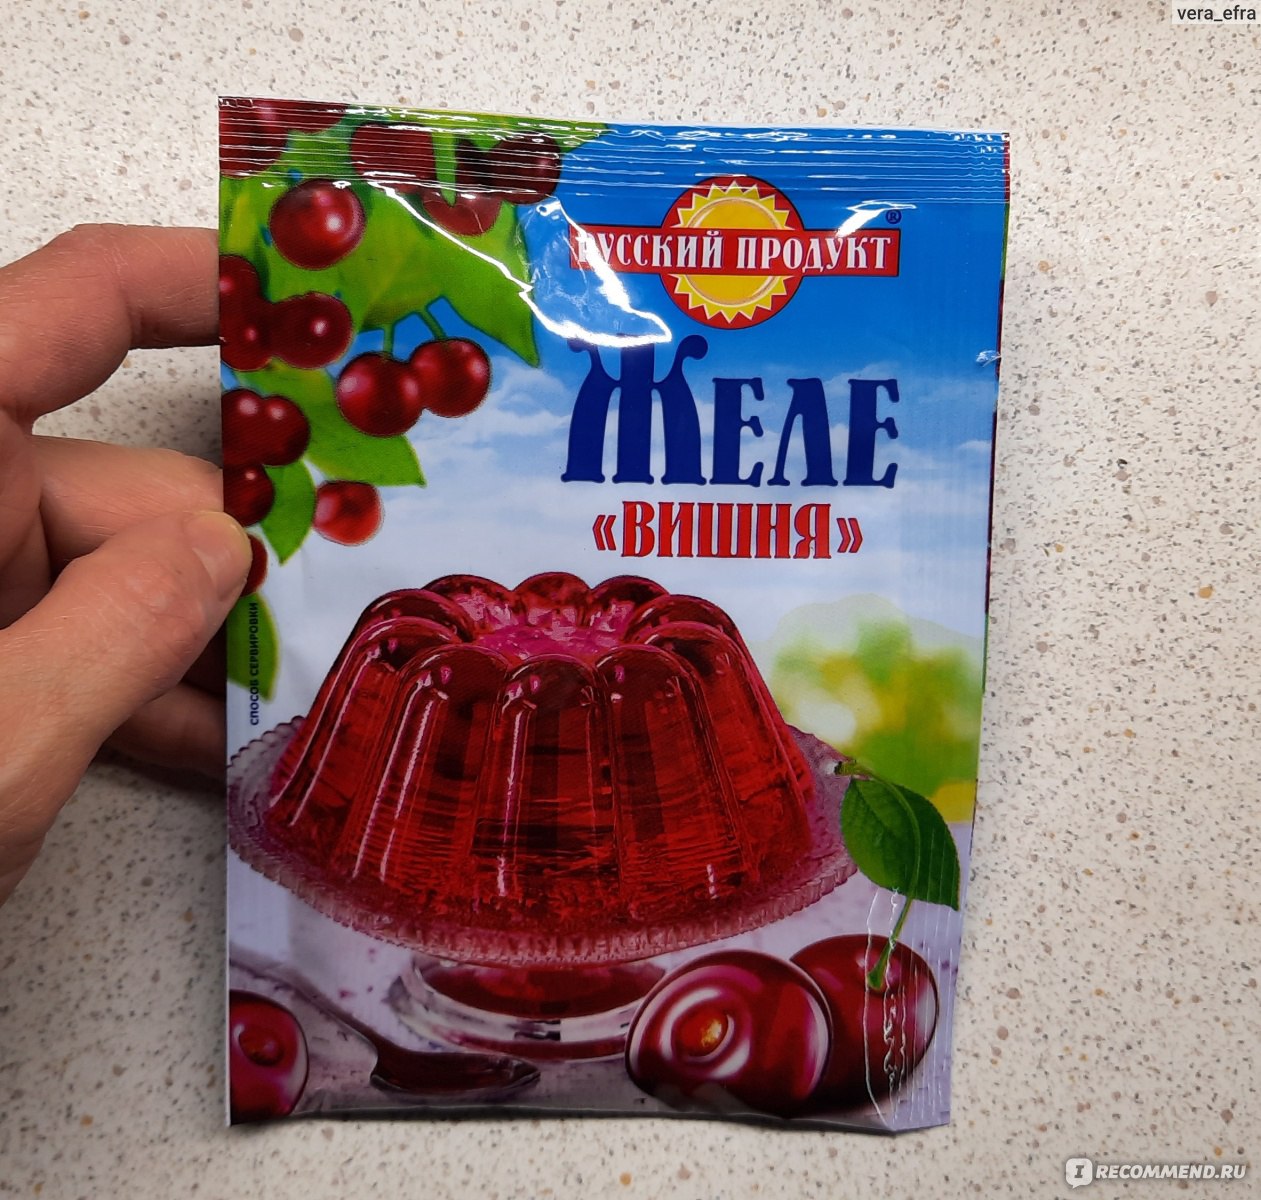 Jelly на русском